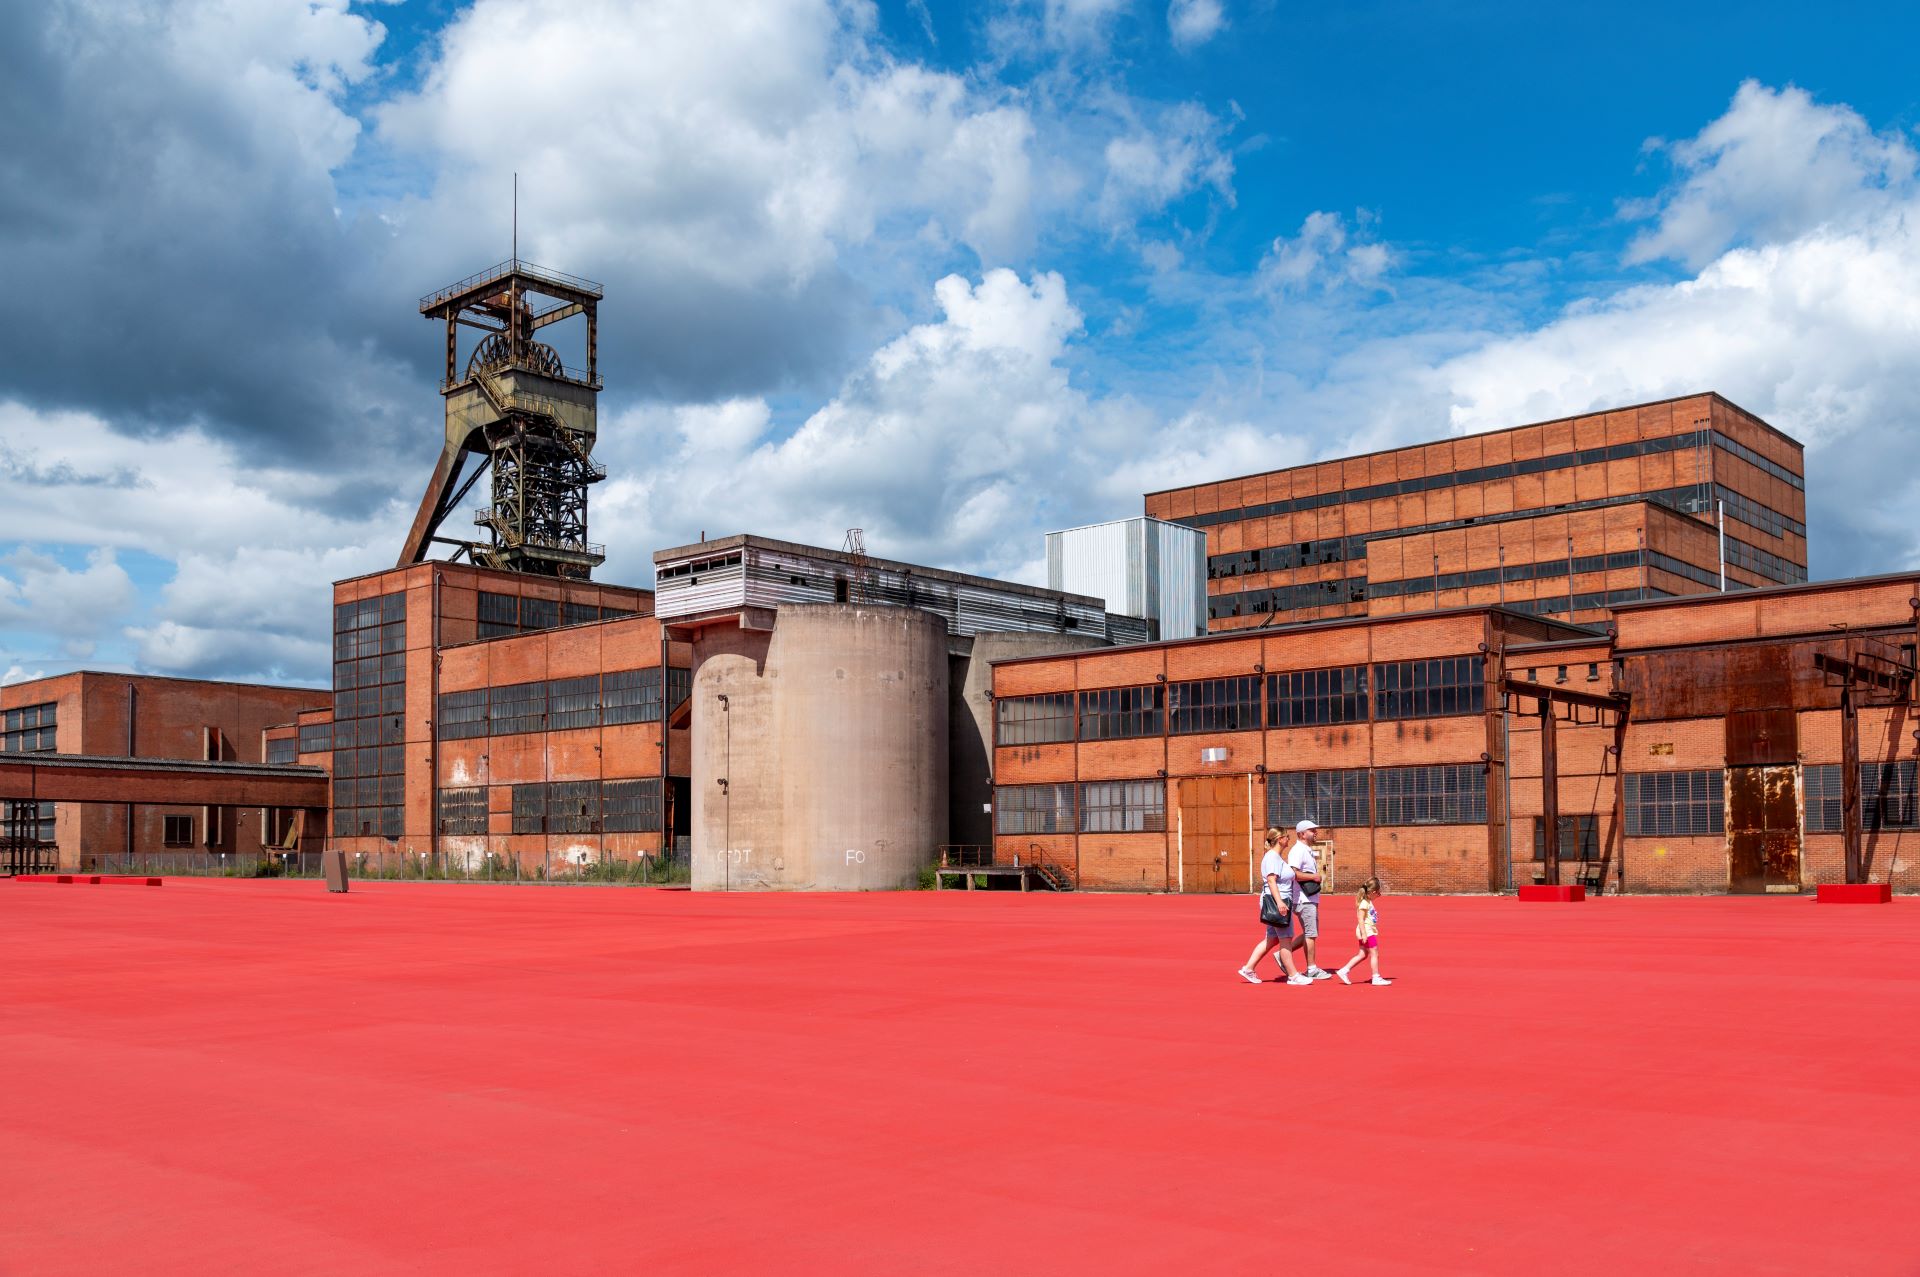 La famille traverse un espace ouvert peint en rouge devant la mine Wendel.